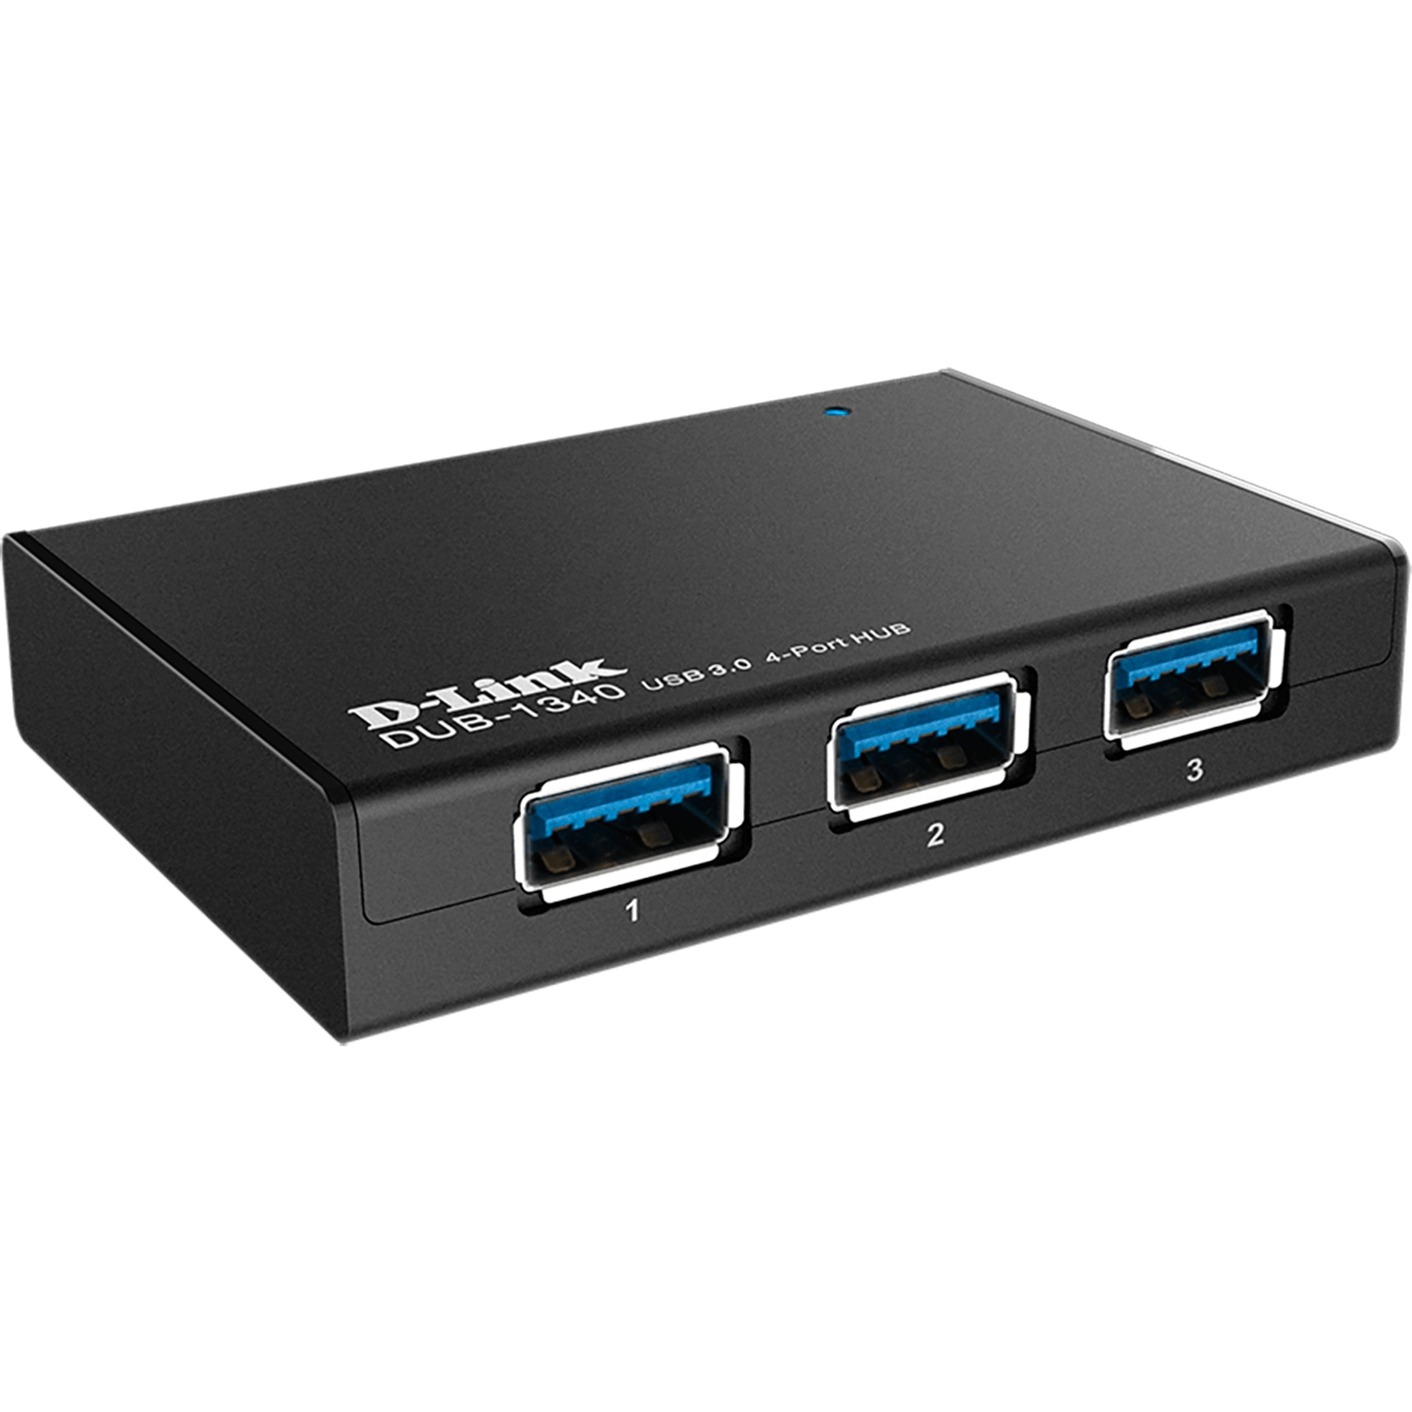 Image of Alternate - DUB-1340, USB-Hub online einkaufen bei Alternate